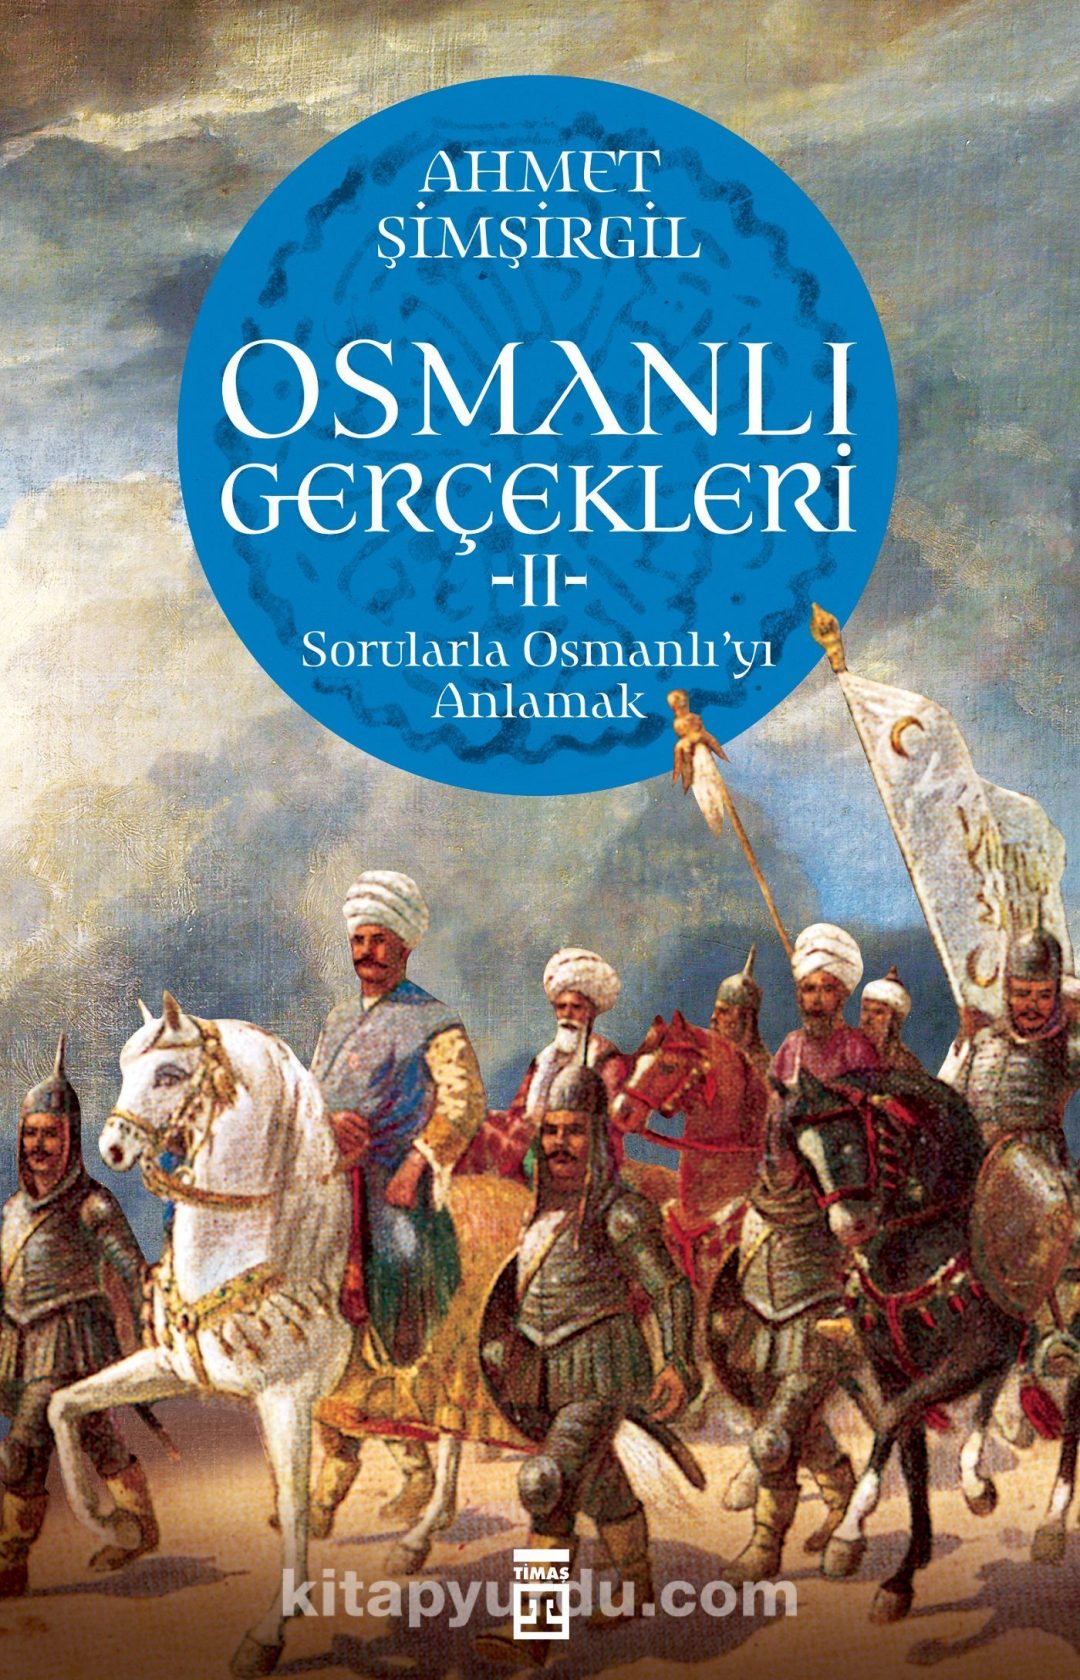 Osmanlı Gerçekleri 2 & Sorularla Osmanlı'yı Anlamak